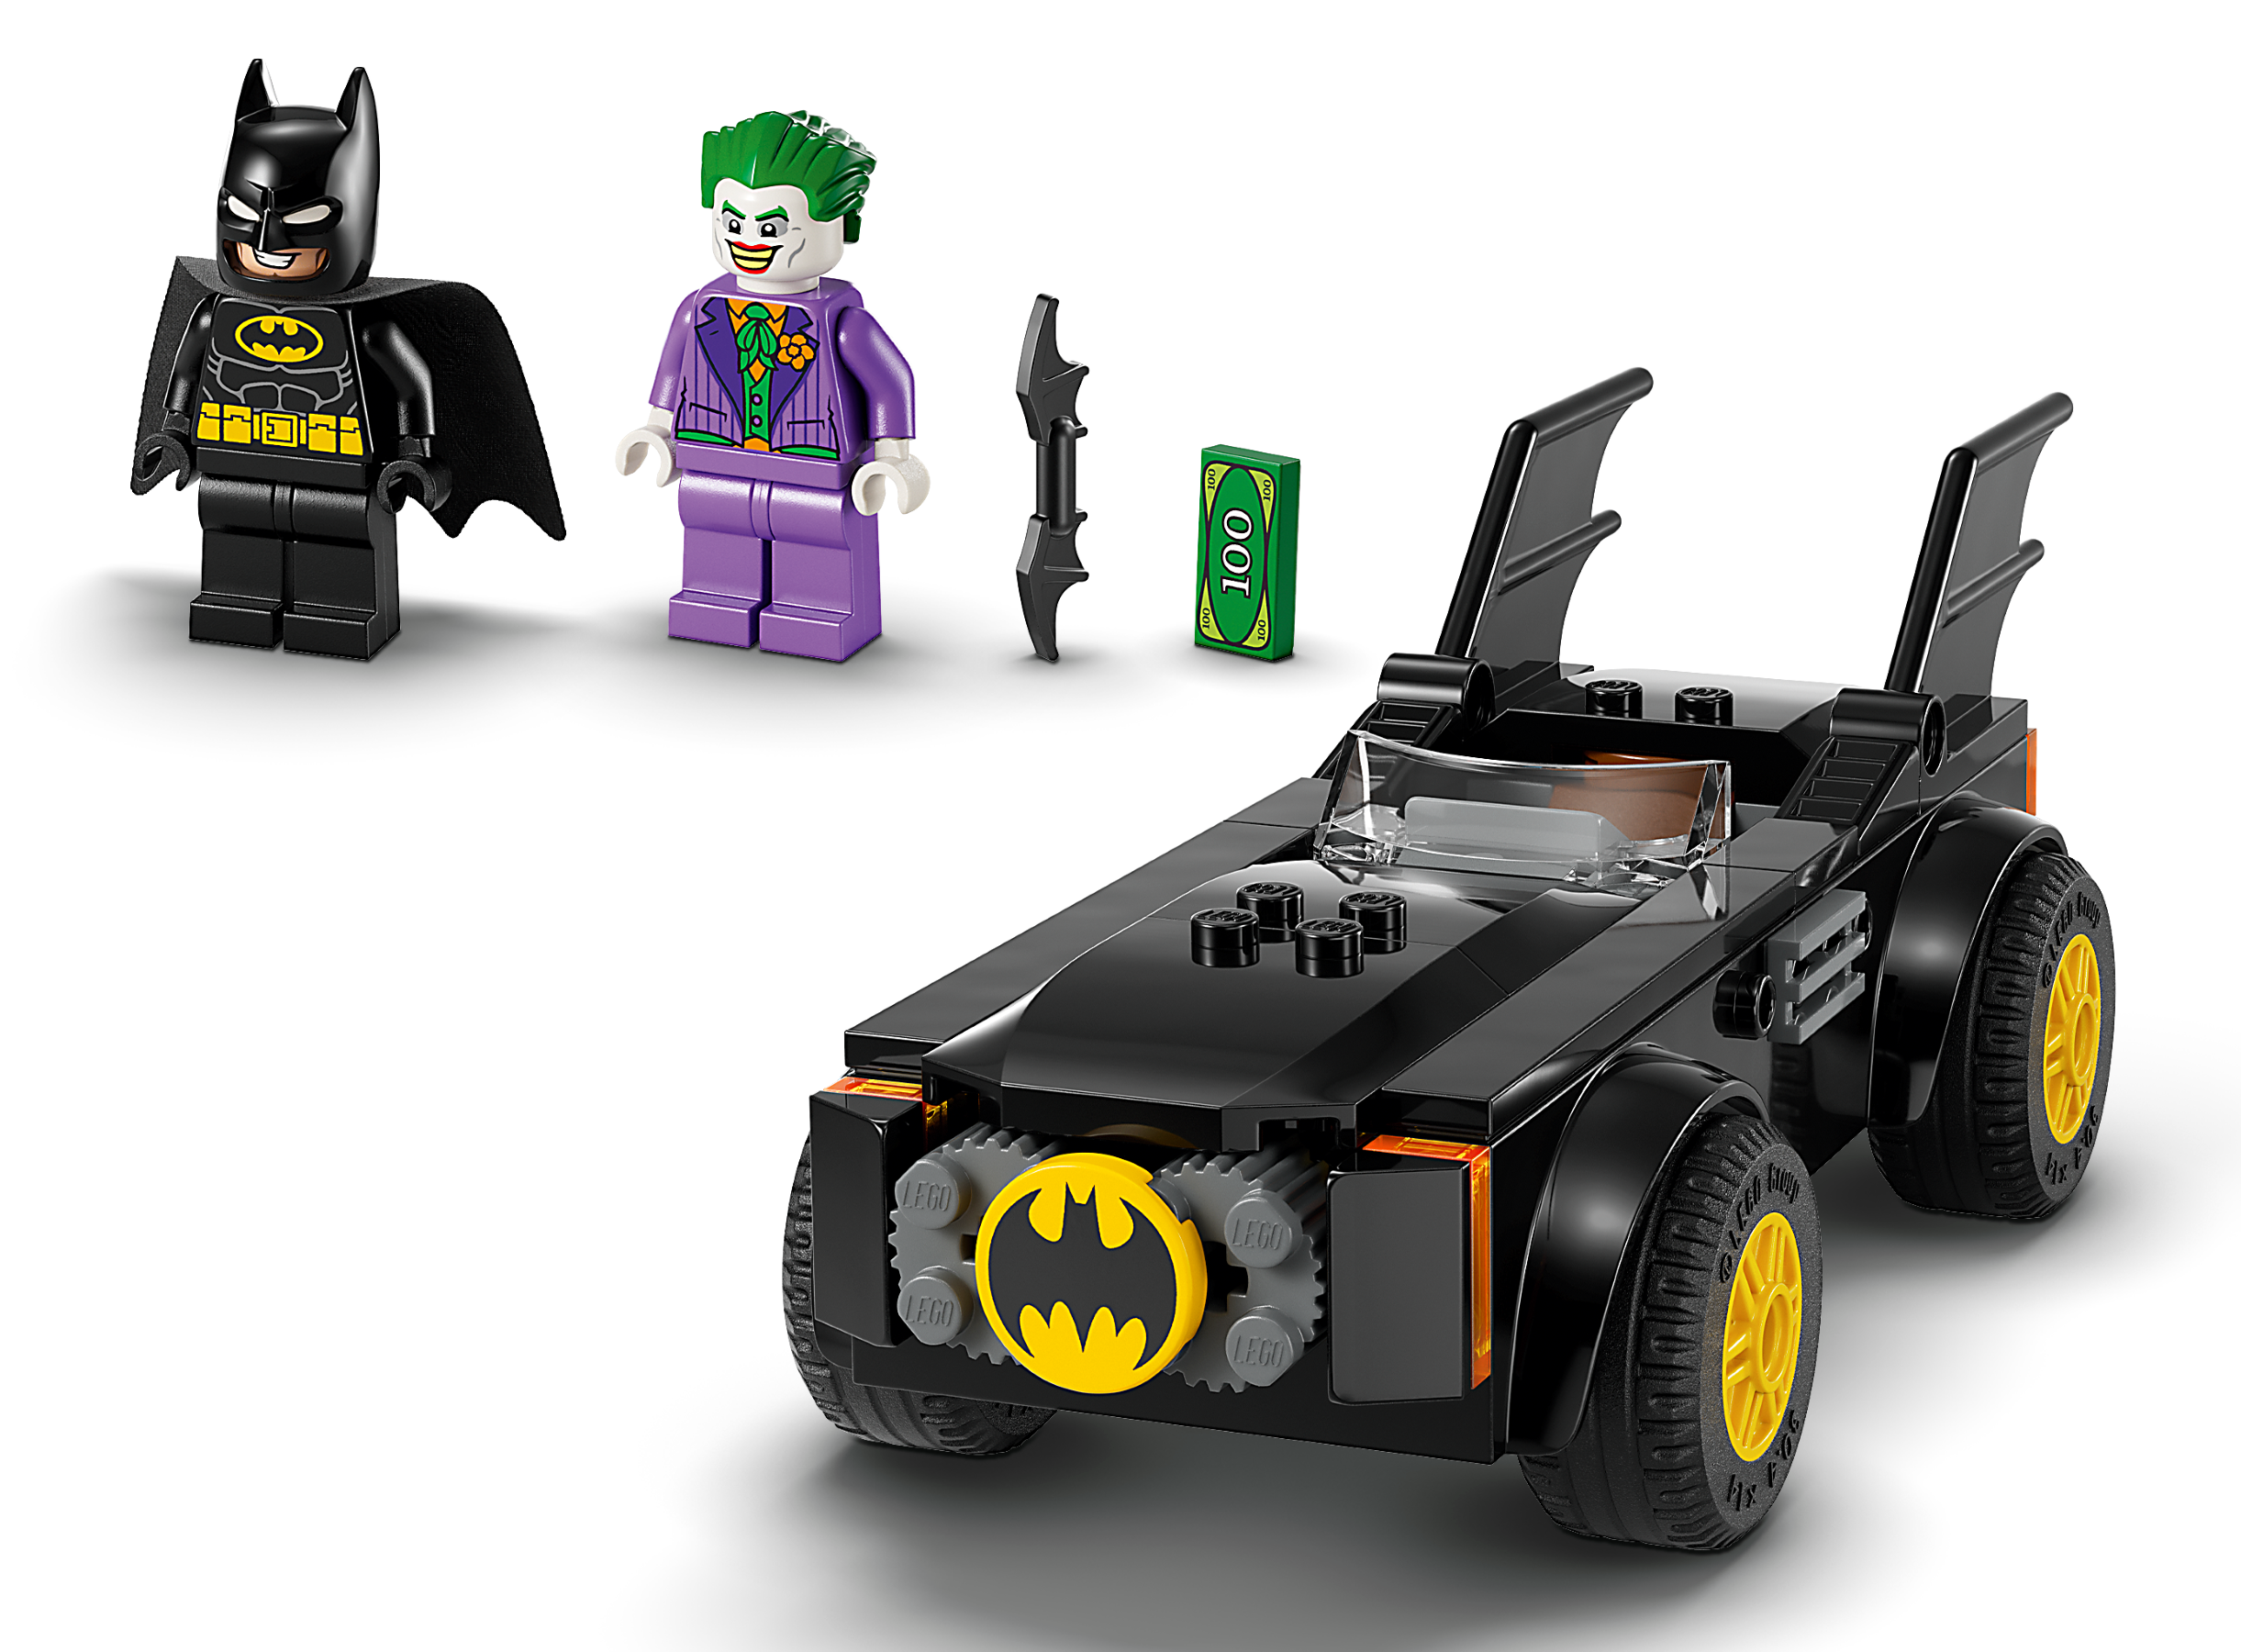 LEGO 76264 DC Batmobile jakt: Batman mot The Joker Byggsats med Leksaksbil,  Modellbyggsats med Superhjälte, Innehåller 2 Minifigurer, Presentidé för